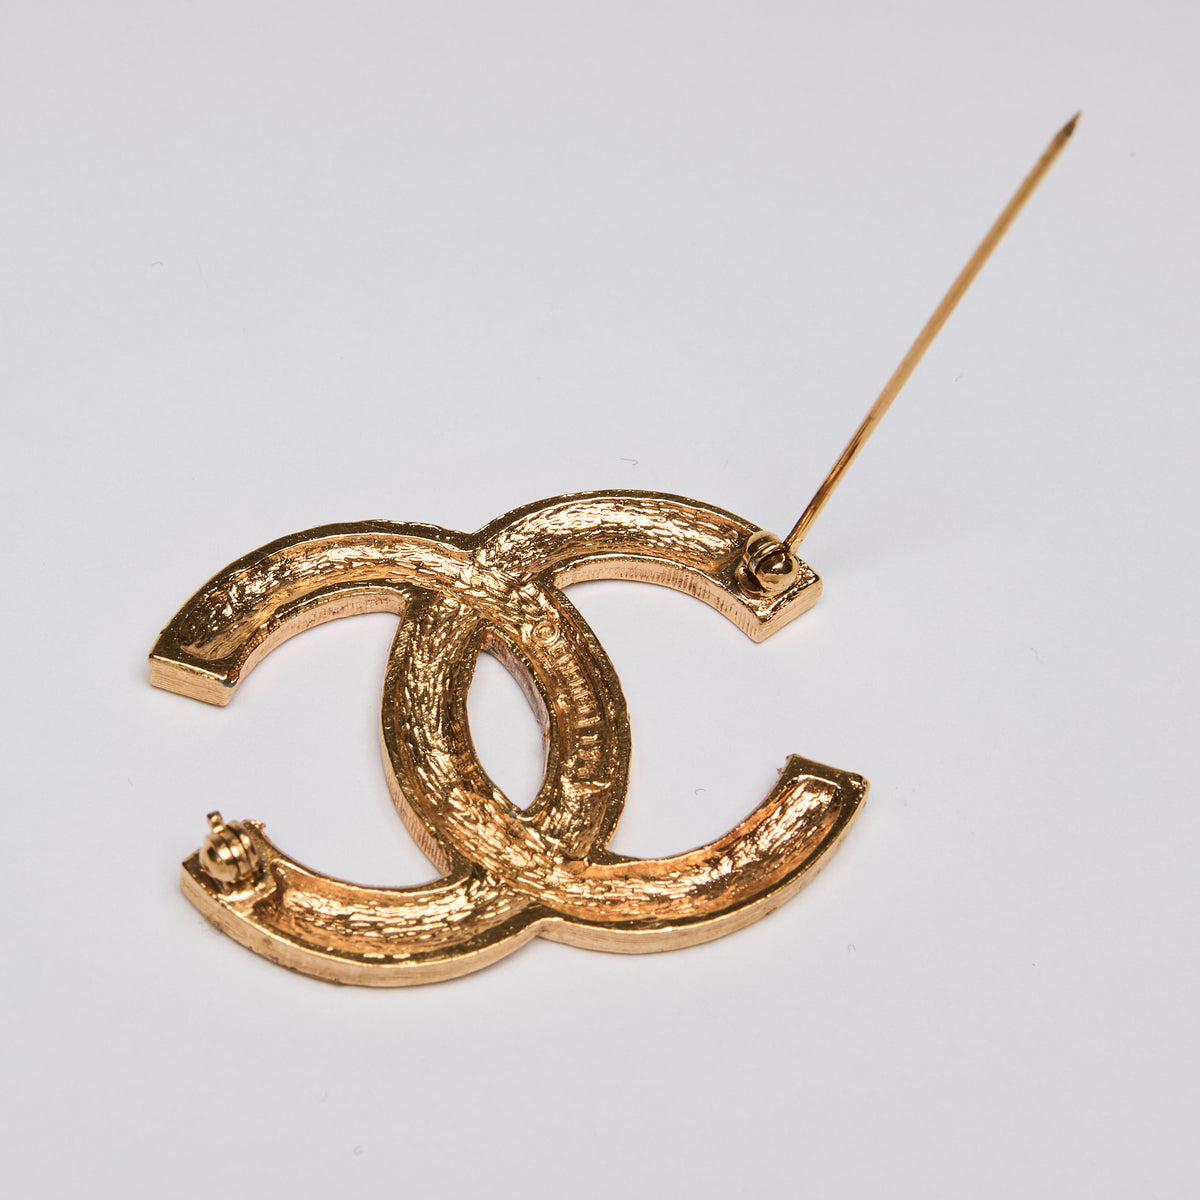 Pre-Loved Chanel™ Crystal Embellished Interlocking Letter Logo Brooch